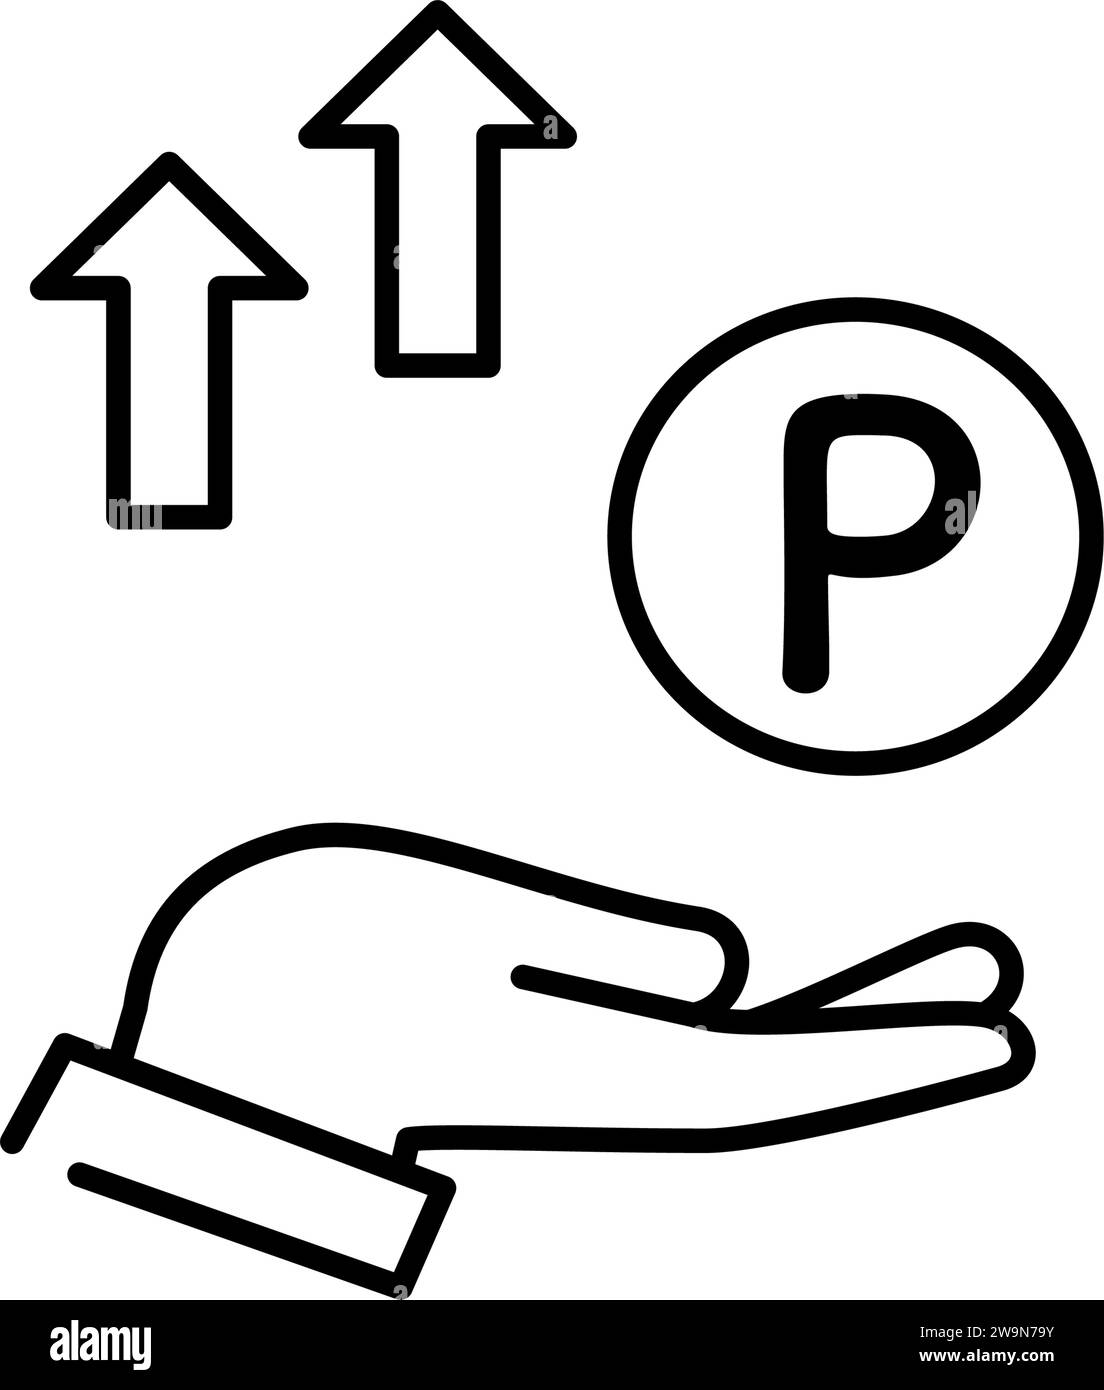 Symbol mit Prämienpunkten Gewinn, einfache Strichzeichnung Illustration, Vektorillustration Stock Vektor